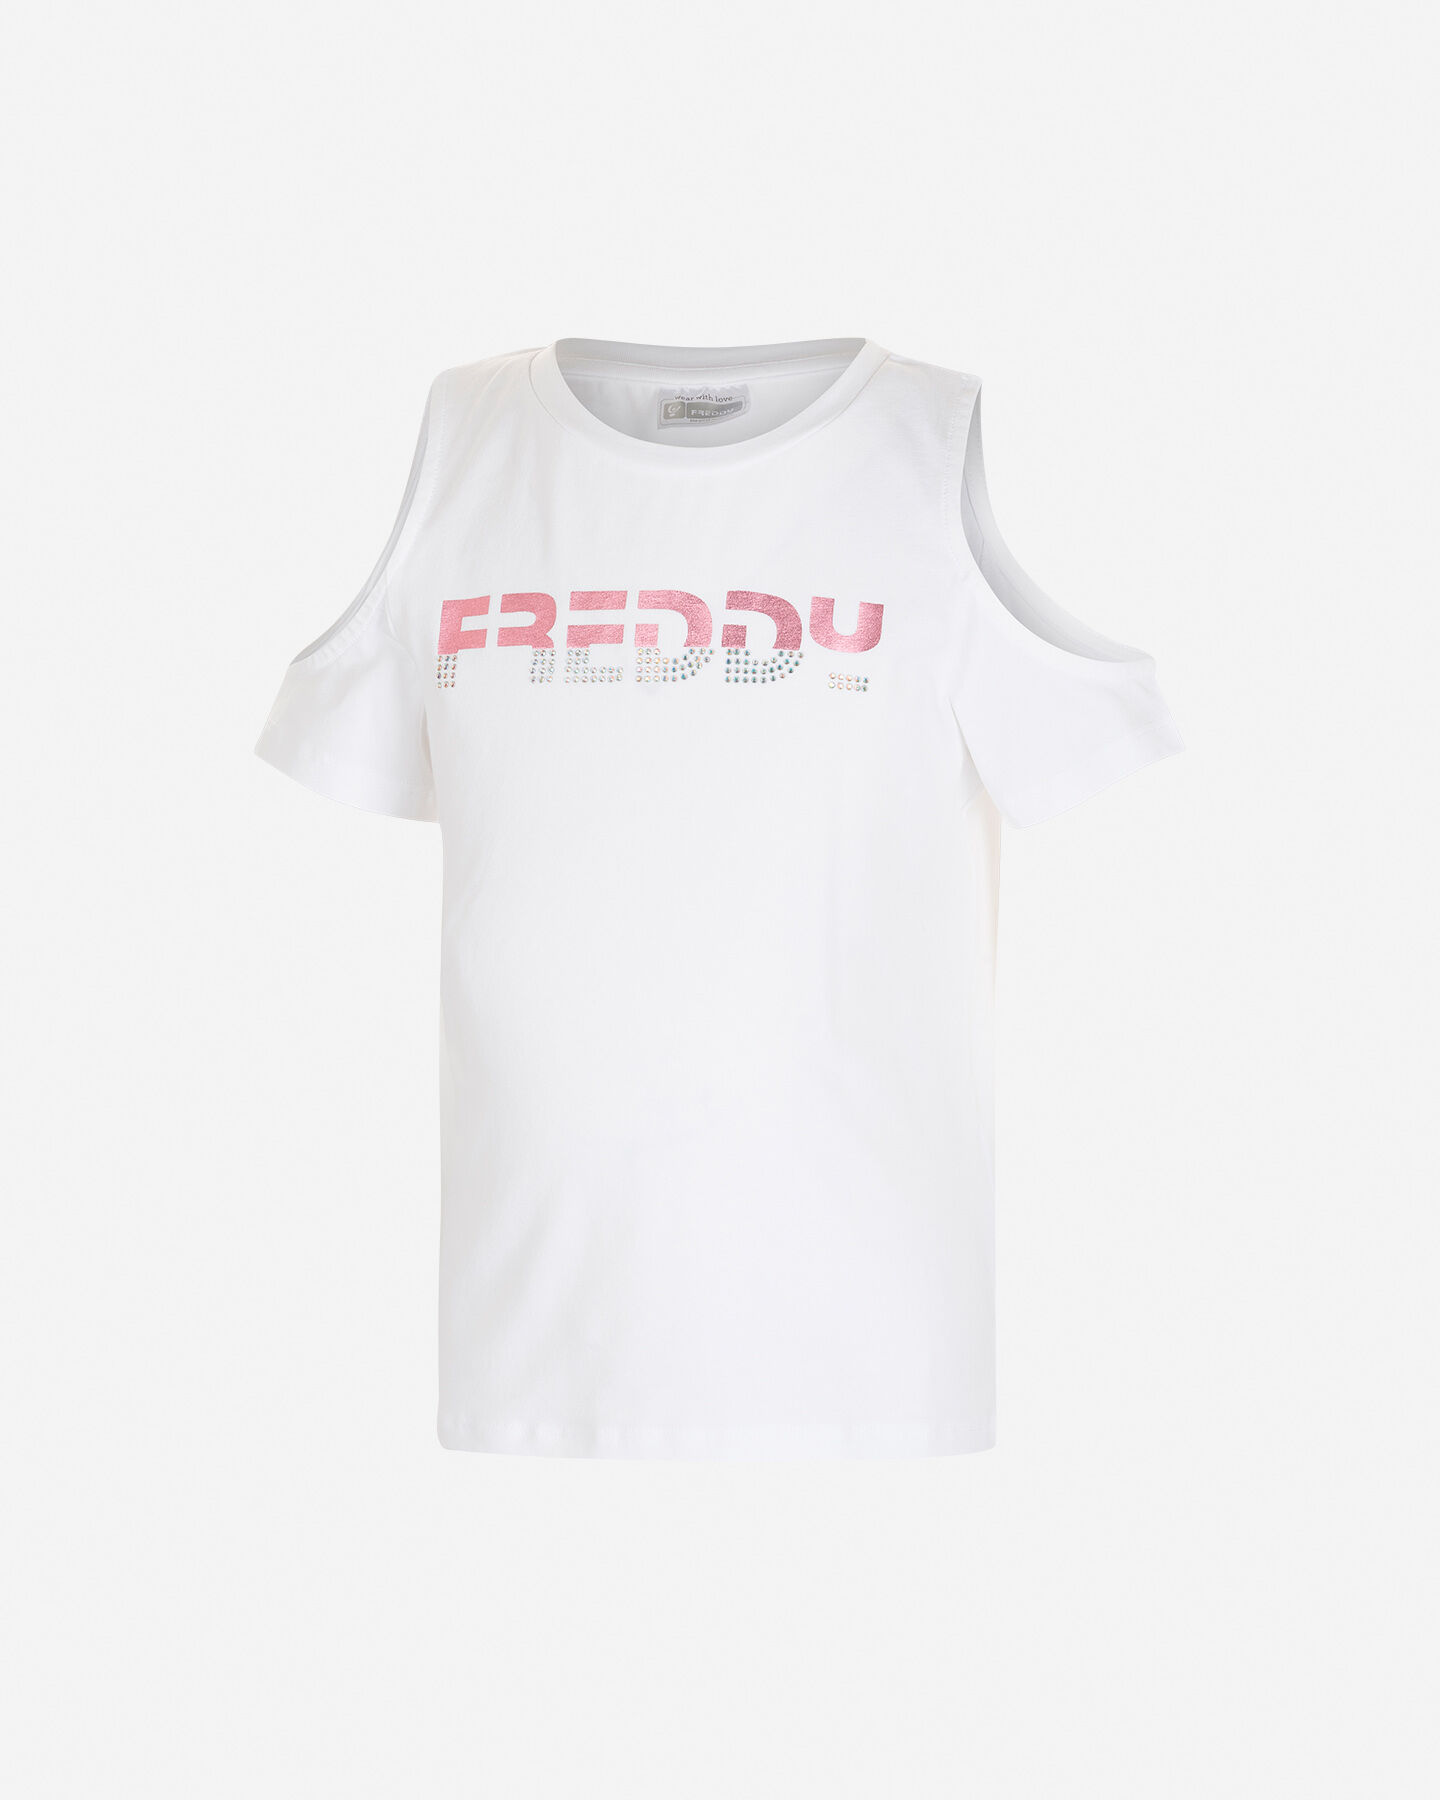  T-Shirt FREDDY OBLO' GIOIELLO JR S4104090|005|8A scatto 0